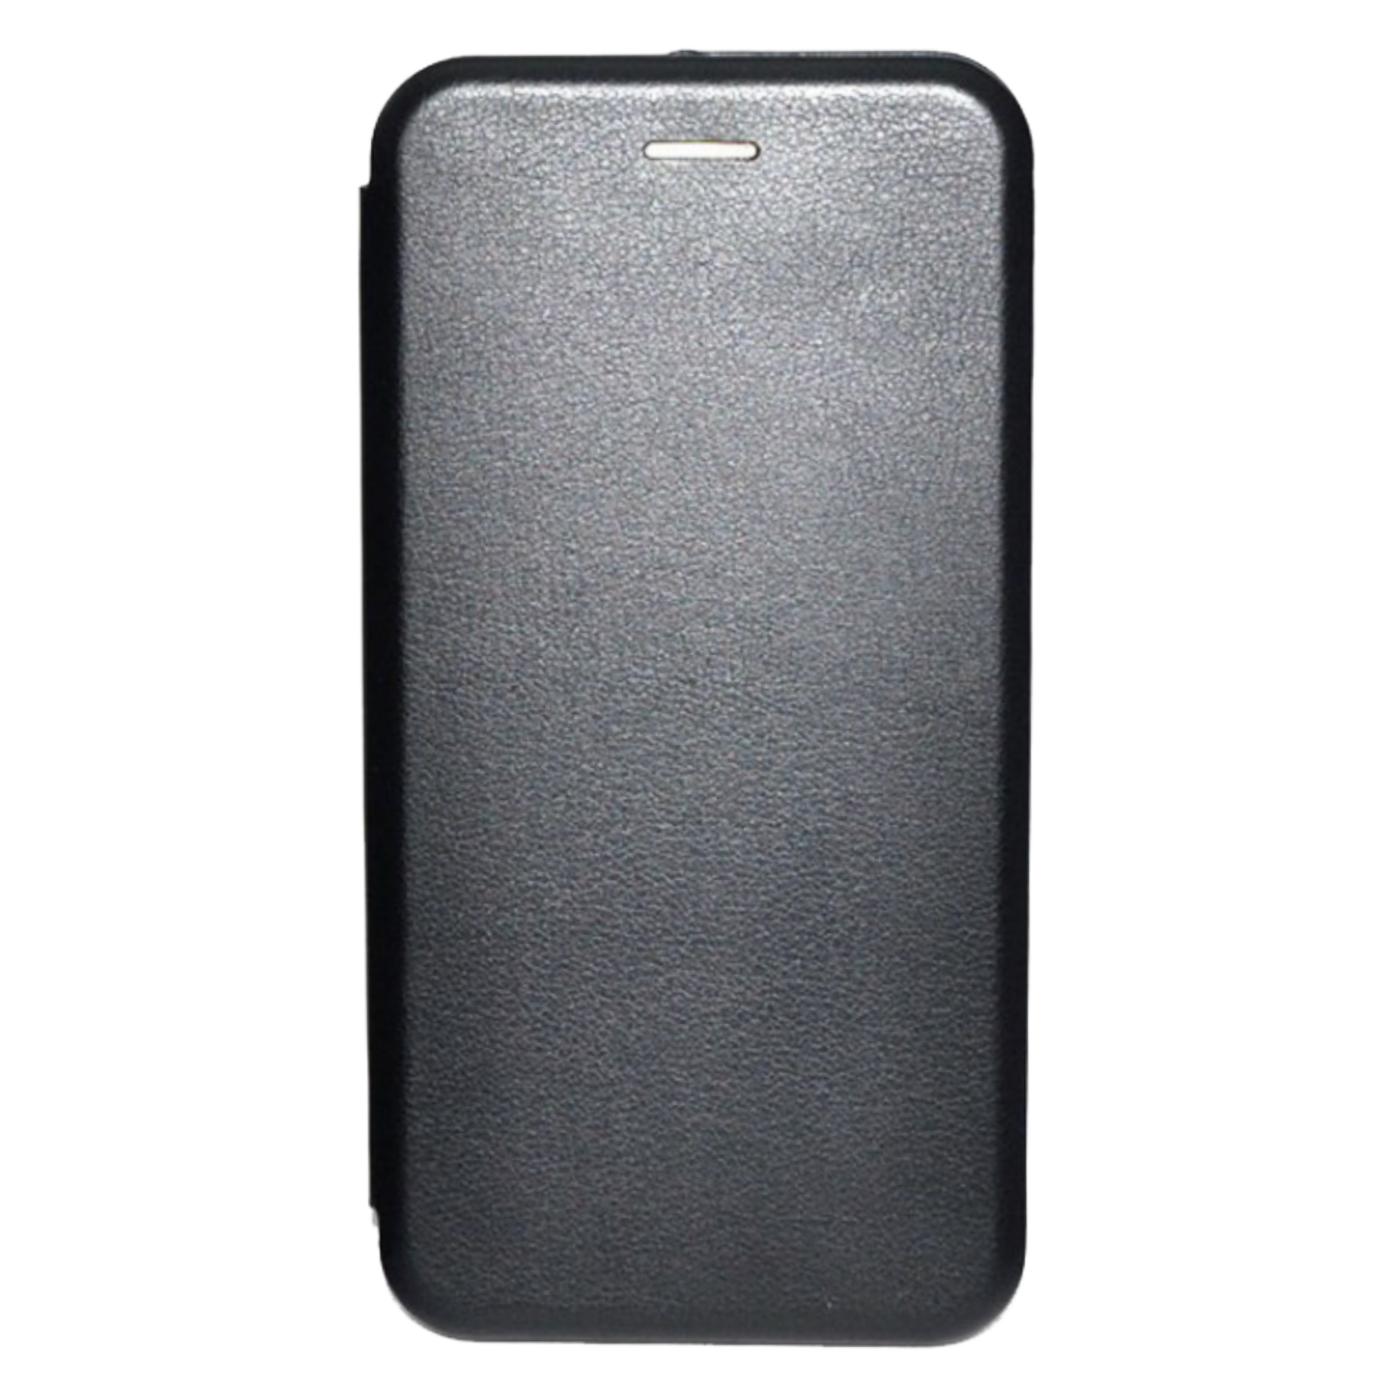 Futrola za mobitel Samsung S8, FLIP, crna